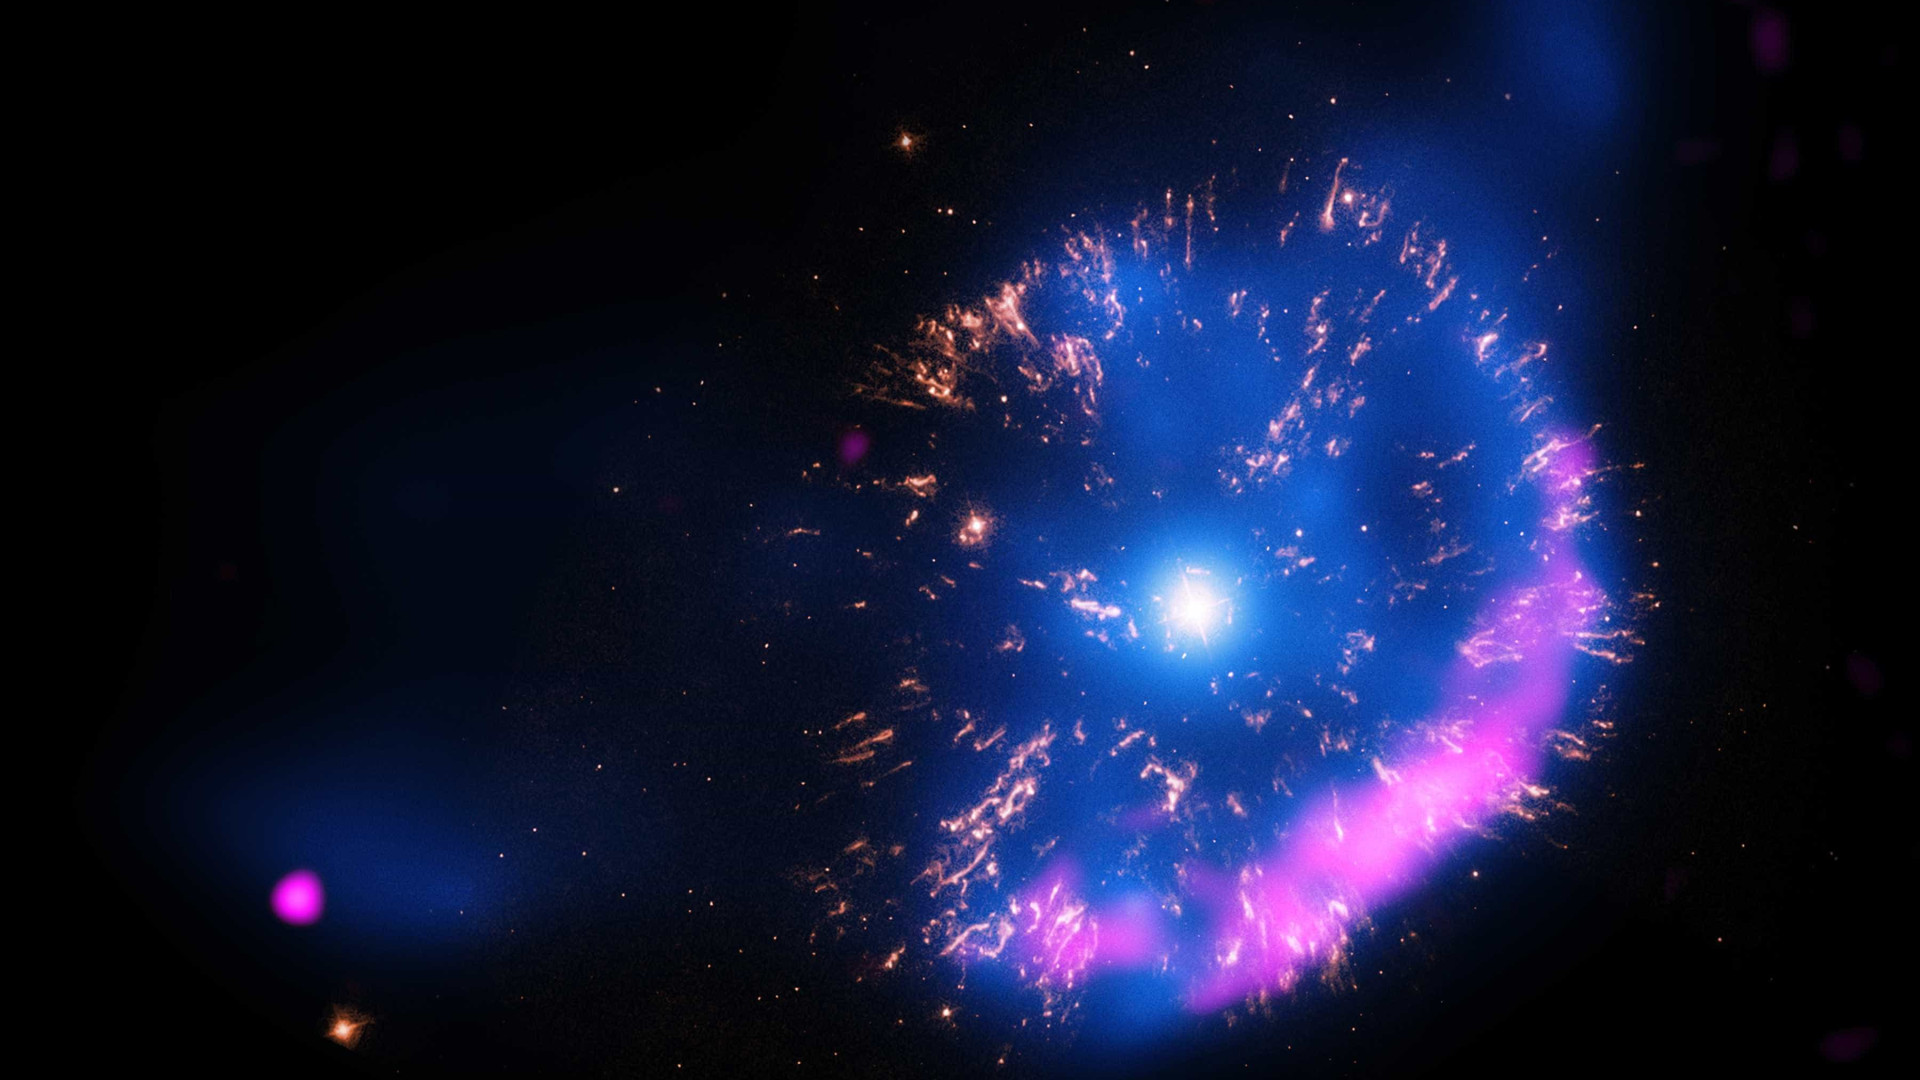 Galáxia espiral aparece rodeando estrelas famosas